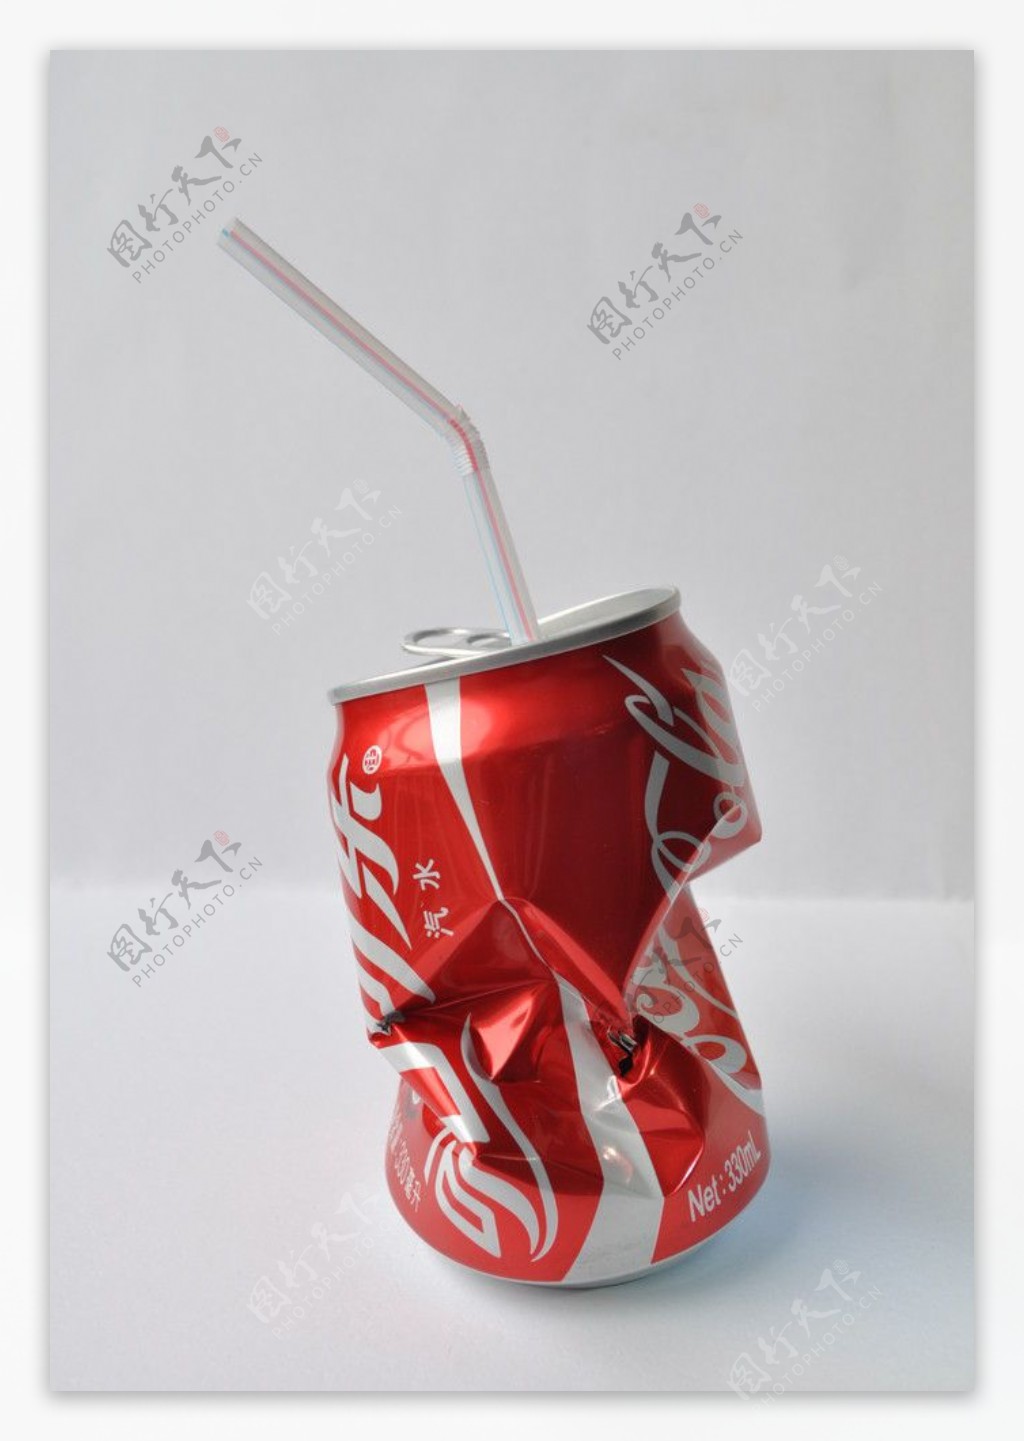 扭曲的可乐罐图片